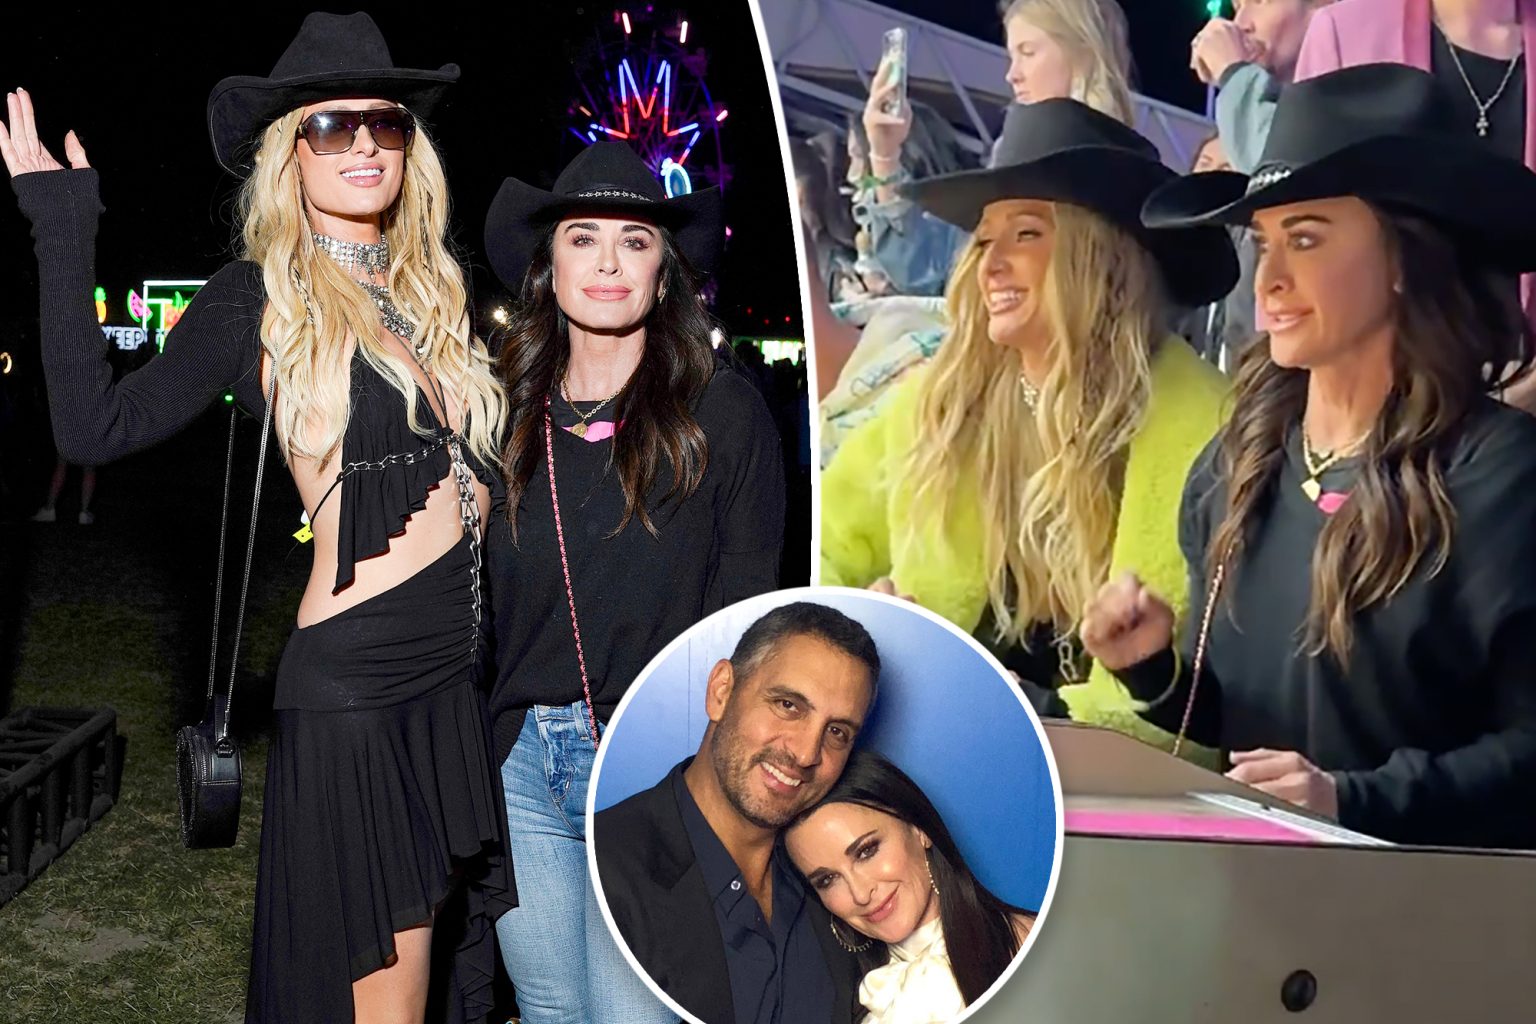 Kyle Richards parties with Paris Hilton at Coachella after niece ...